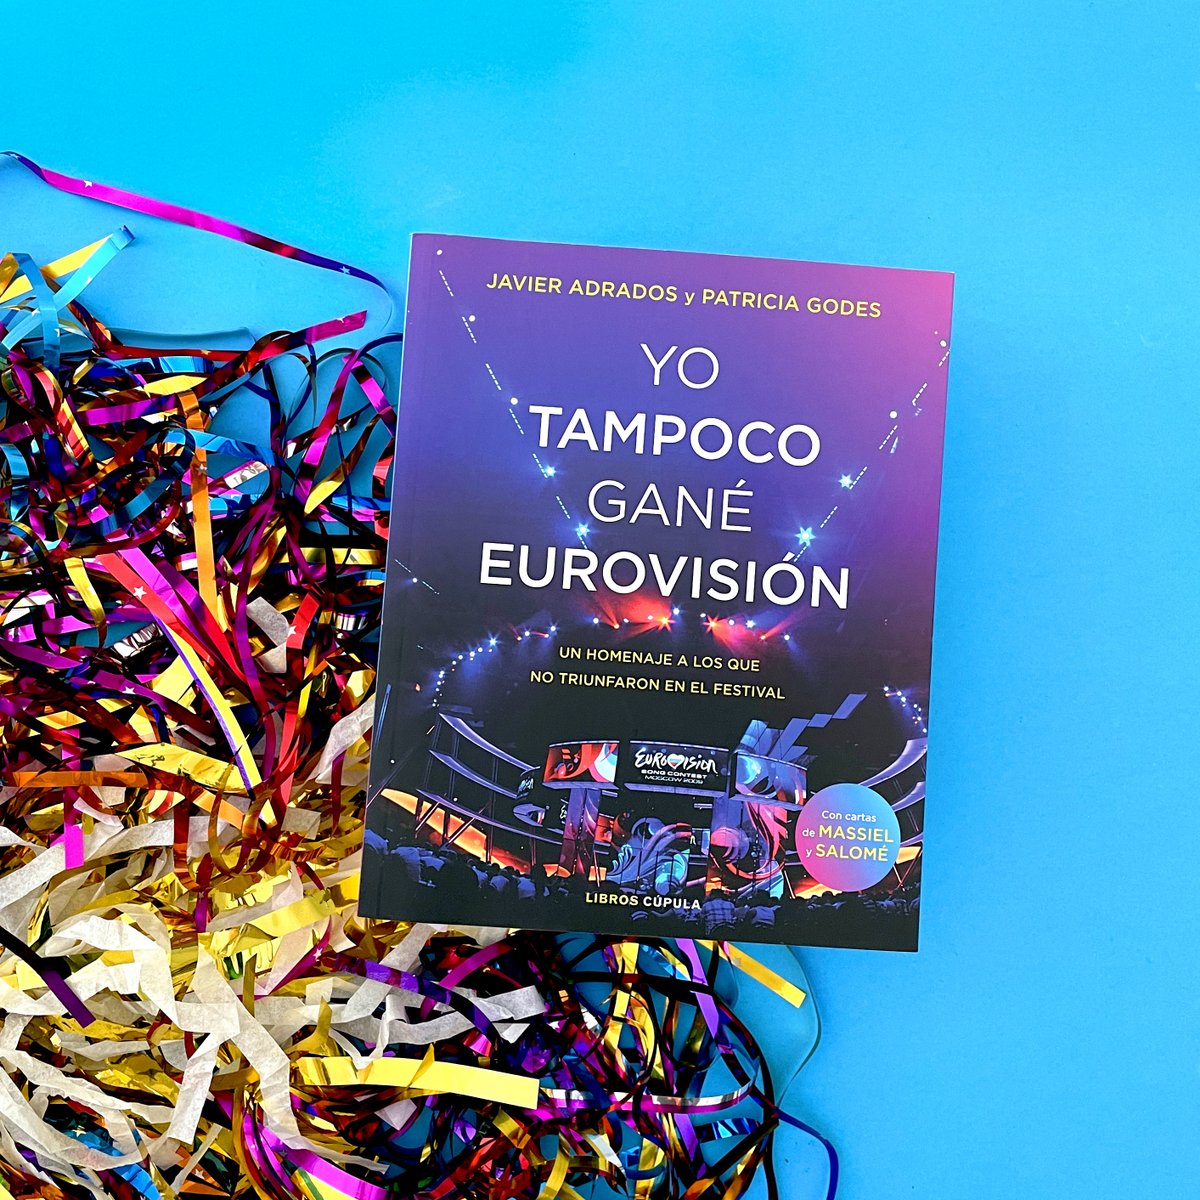 ¿Listos para nuestra cita anual con el Festival de #Eurovisión? ¡Hoy la primera semifinal! 🙋‍♂️ ¡Y no olvidéis a los que participaron y no ganaron! 📚 'Yo tampoco gané #Eurovisión' 👉 ow.ly/ASFm50EIp7O #JavierAdrados @PatriciaGodes @eurovision_tve